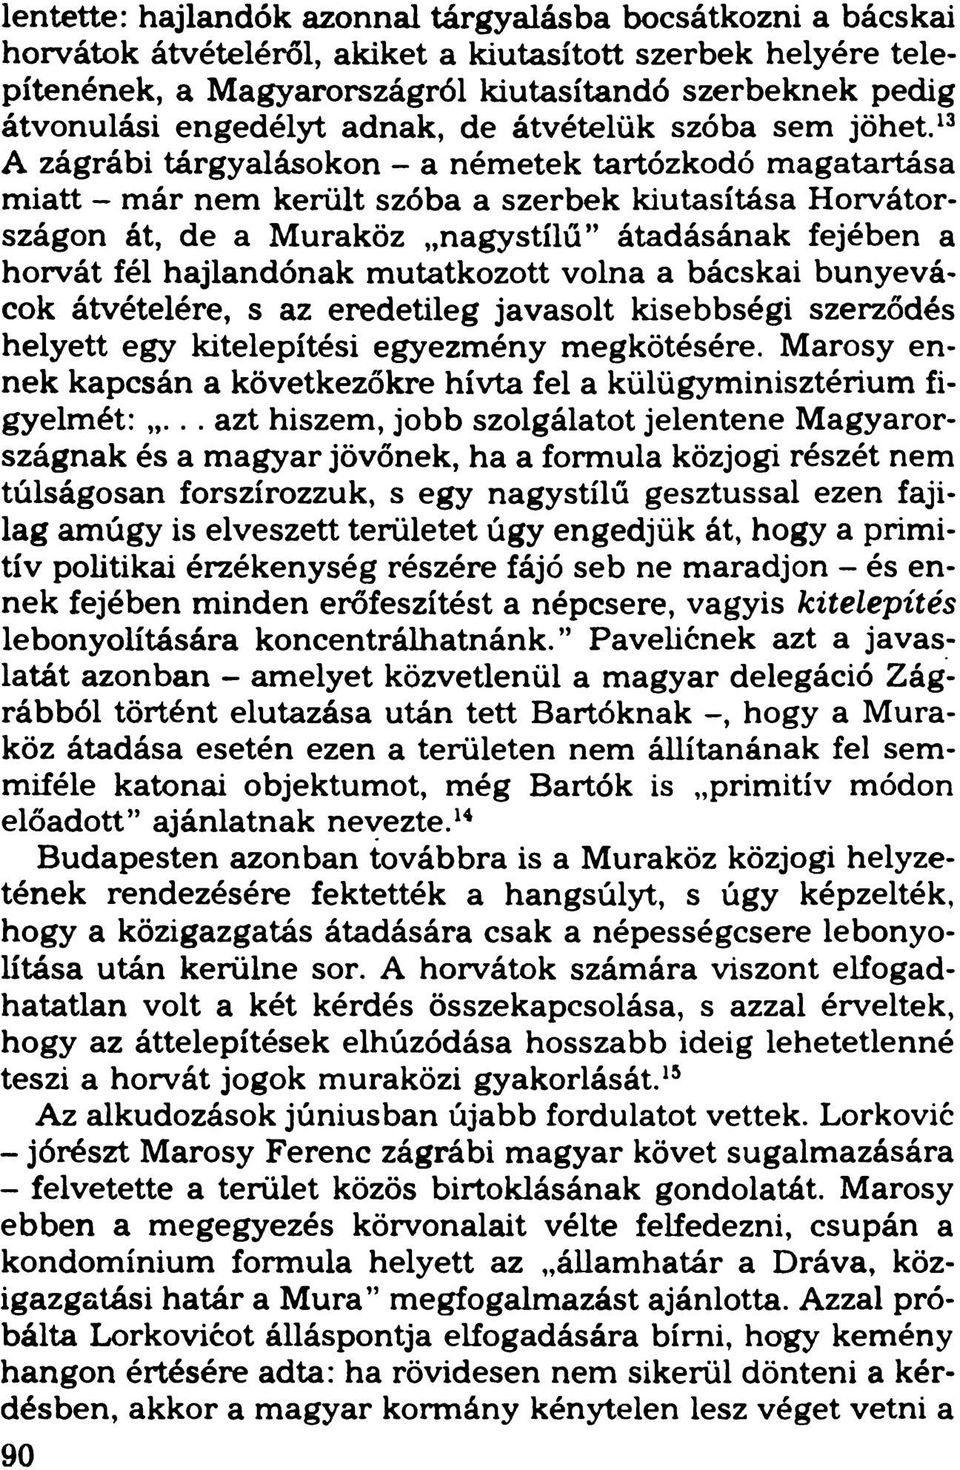 13 A zágrábi tárgyalásokon - a németek tartózkodó magatartása miatt - már nem került szóba a szerbek kiutasítása Horvátországon át, de a Muraköz nagystílű átadásának fejében a horvát fél hajlandónak